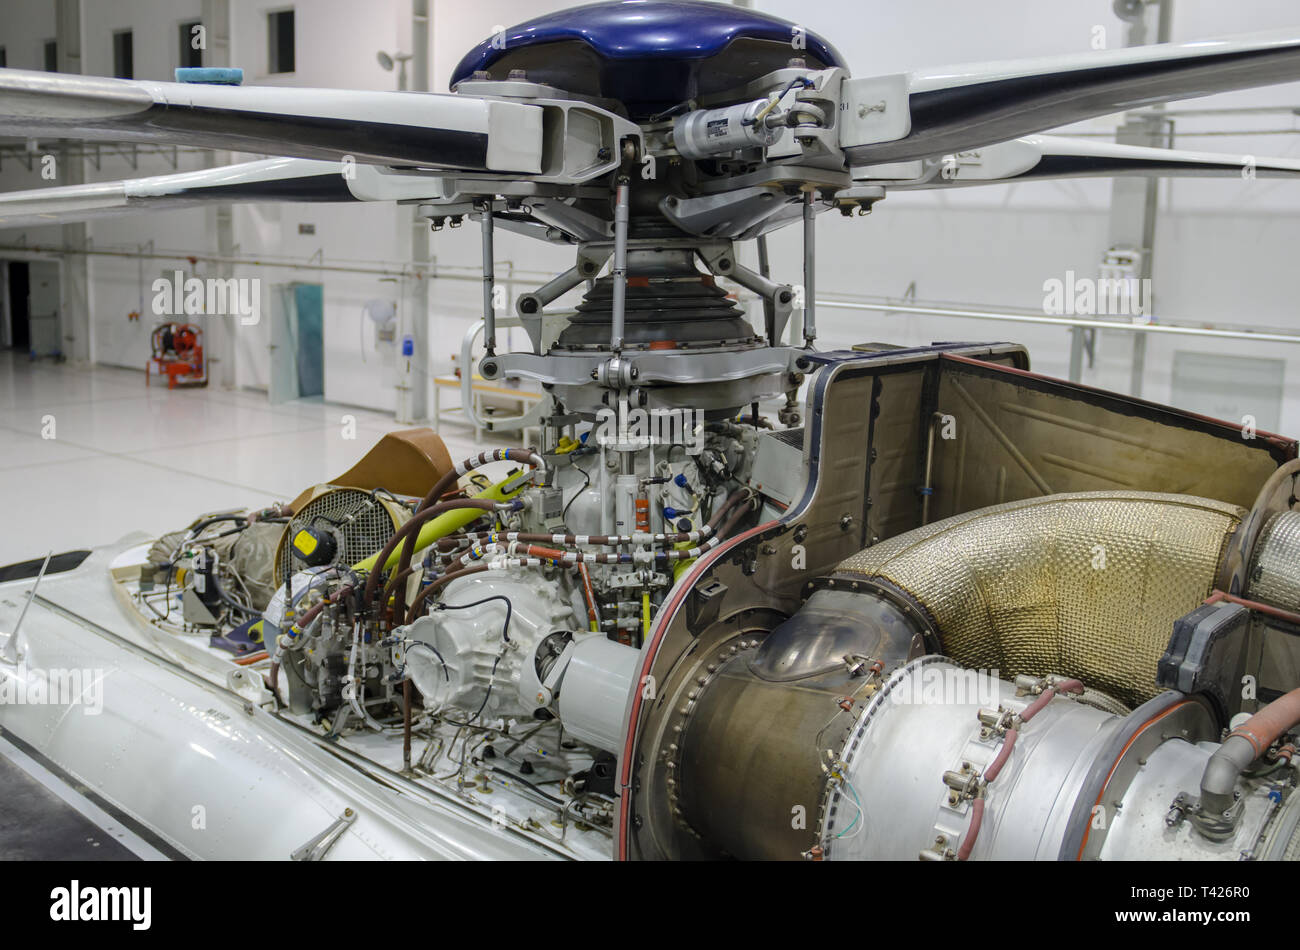 Hubschrauber Gas Turbine Engine mit der Verkleidung für die Wartung im  Hangar eröffnet Stockfotografie - Alamy